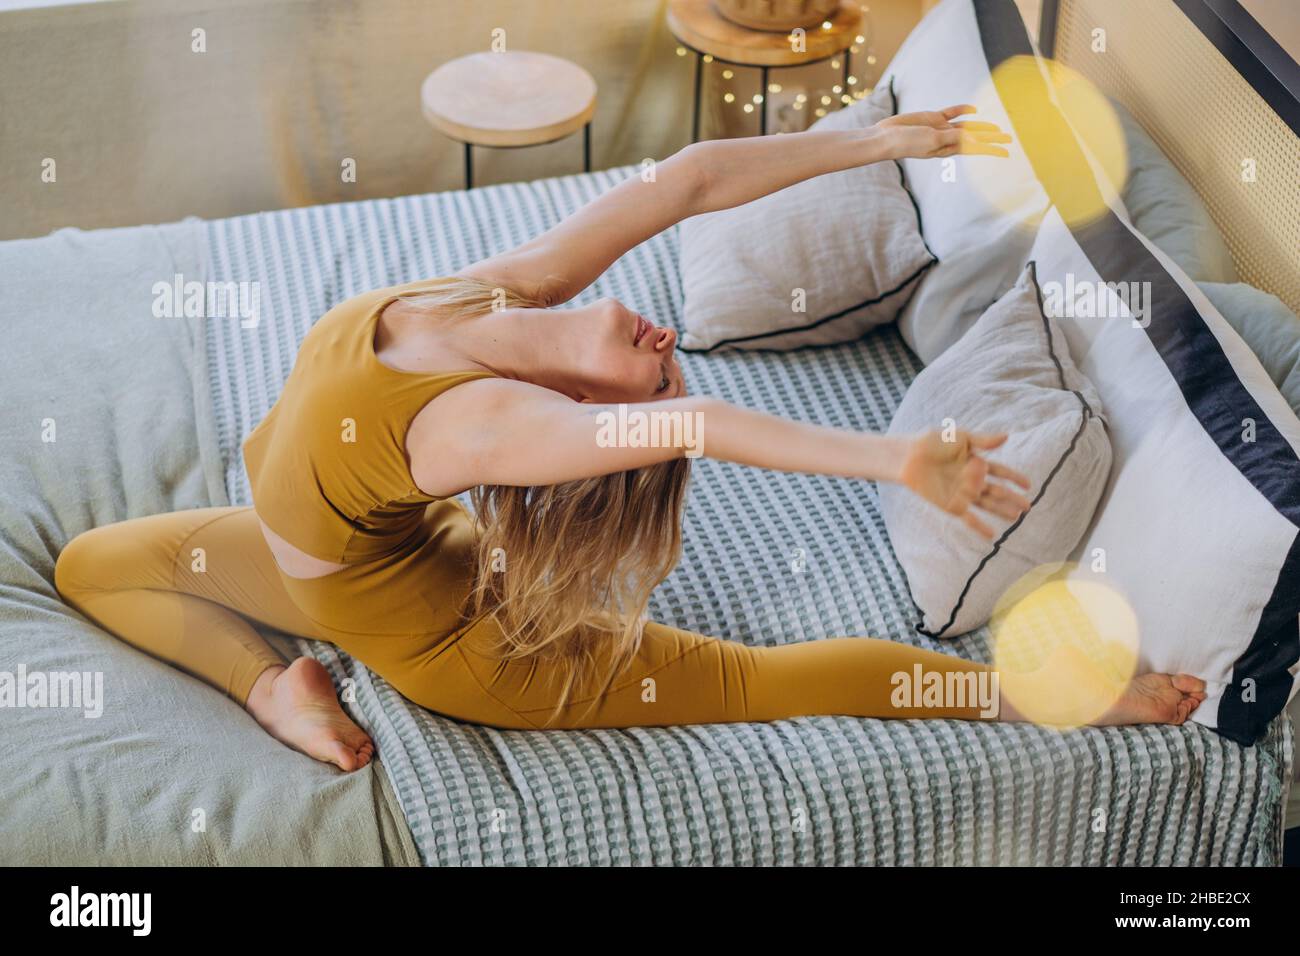 Die junge blonde Frau trägt ein Sporttop und Leggings, die Yoga-Posen machen, und dehnt sich auf einer weichen Decke, die das Bett mit Girlande-Beleuchtung bedeckt Stockfoto